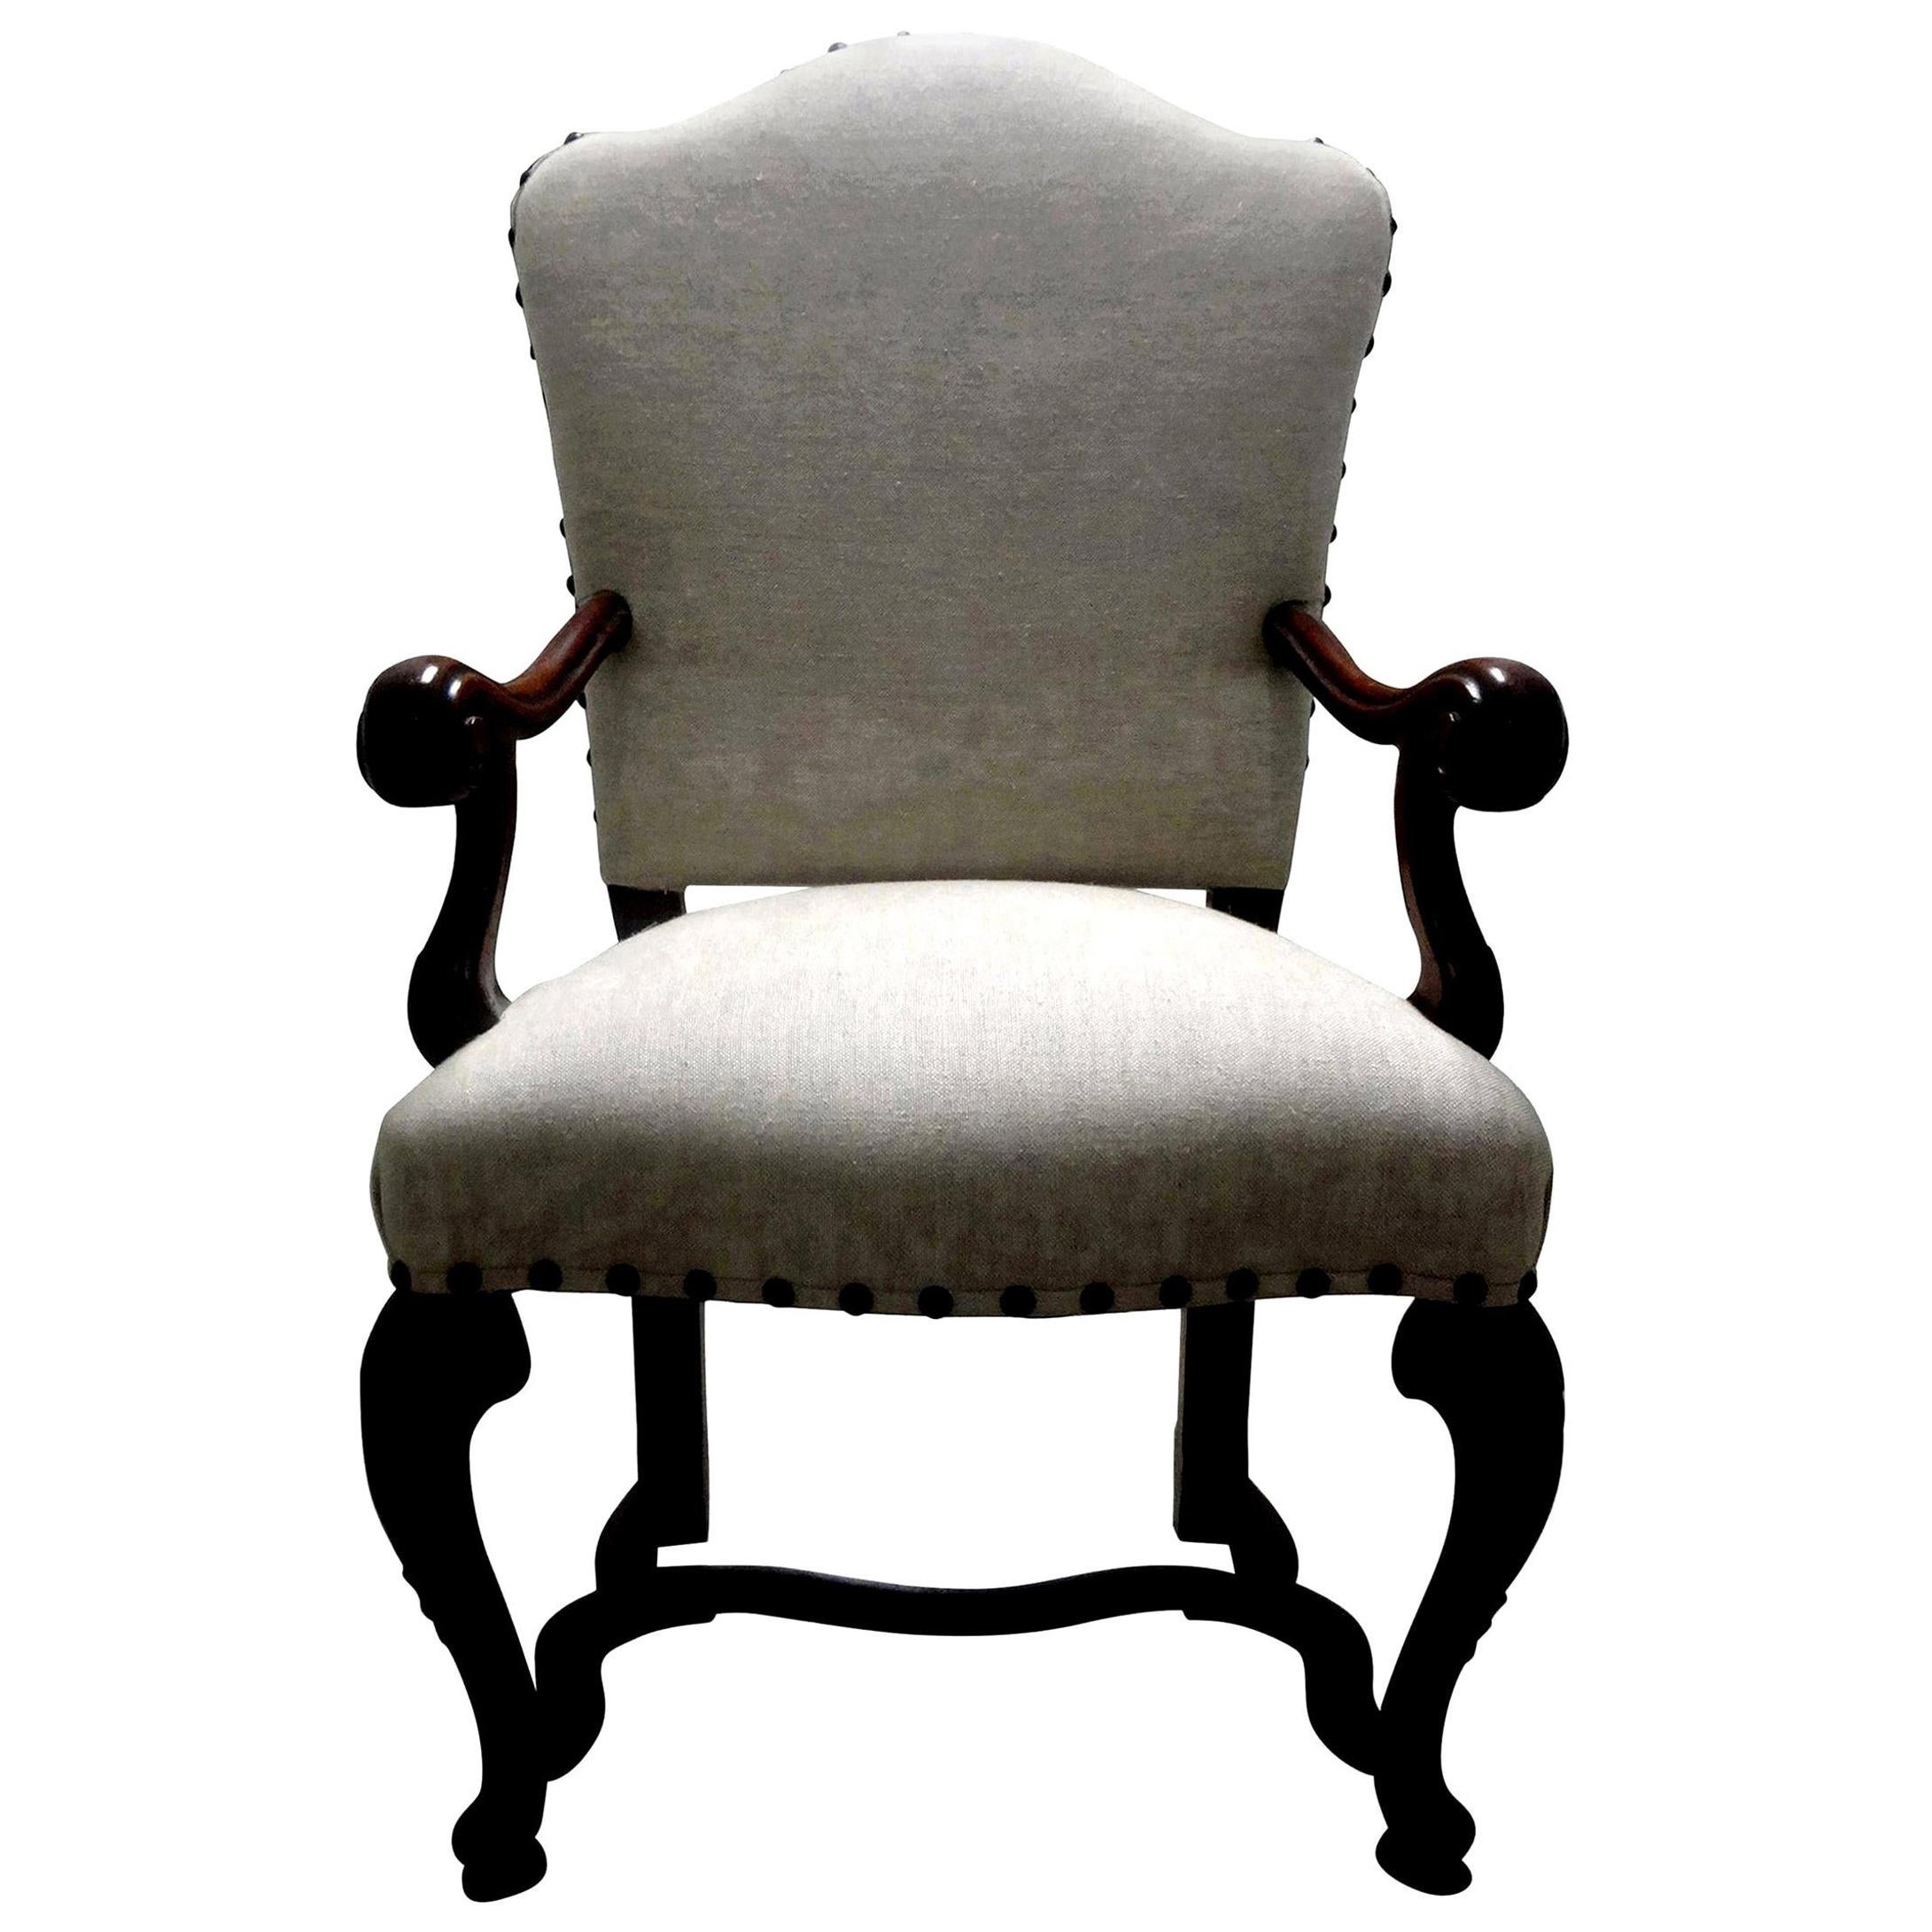 Italienischer Louis-XIV-Stuhl aus Nussbaumholz, 18. Jahrhundert.
Schöner norditalienischer Louis-XIV-Stuhl aus Nussbaum des 18. Jahrhunderts. Unser wunderschöner antiker Sessel aus italienischem Nussbaumholz wurde bis auf den Rahmen zerlegt und